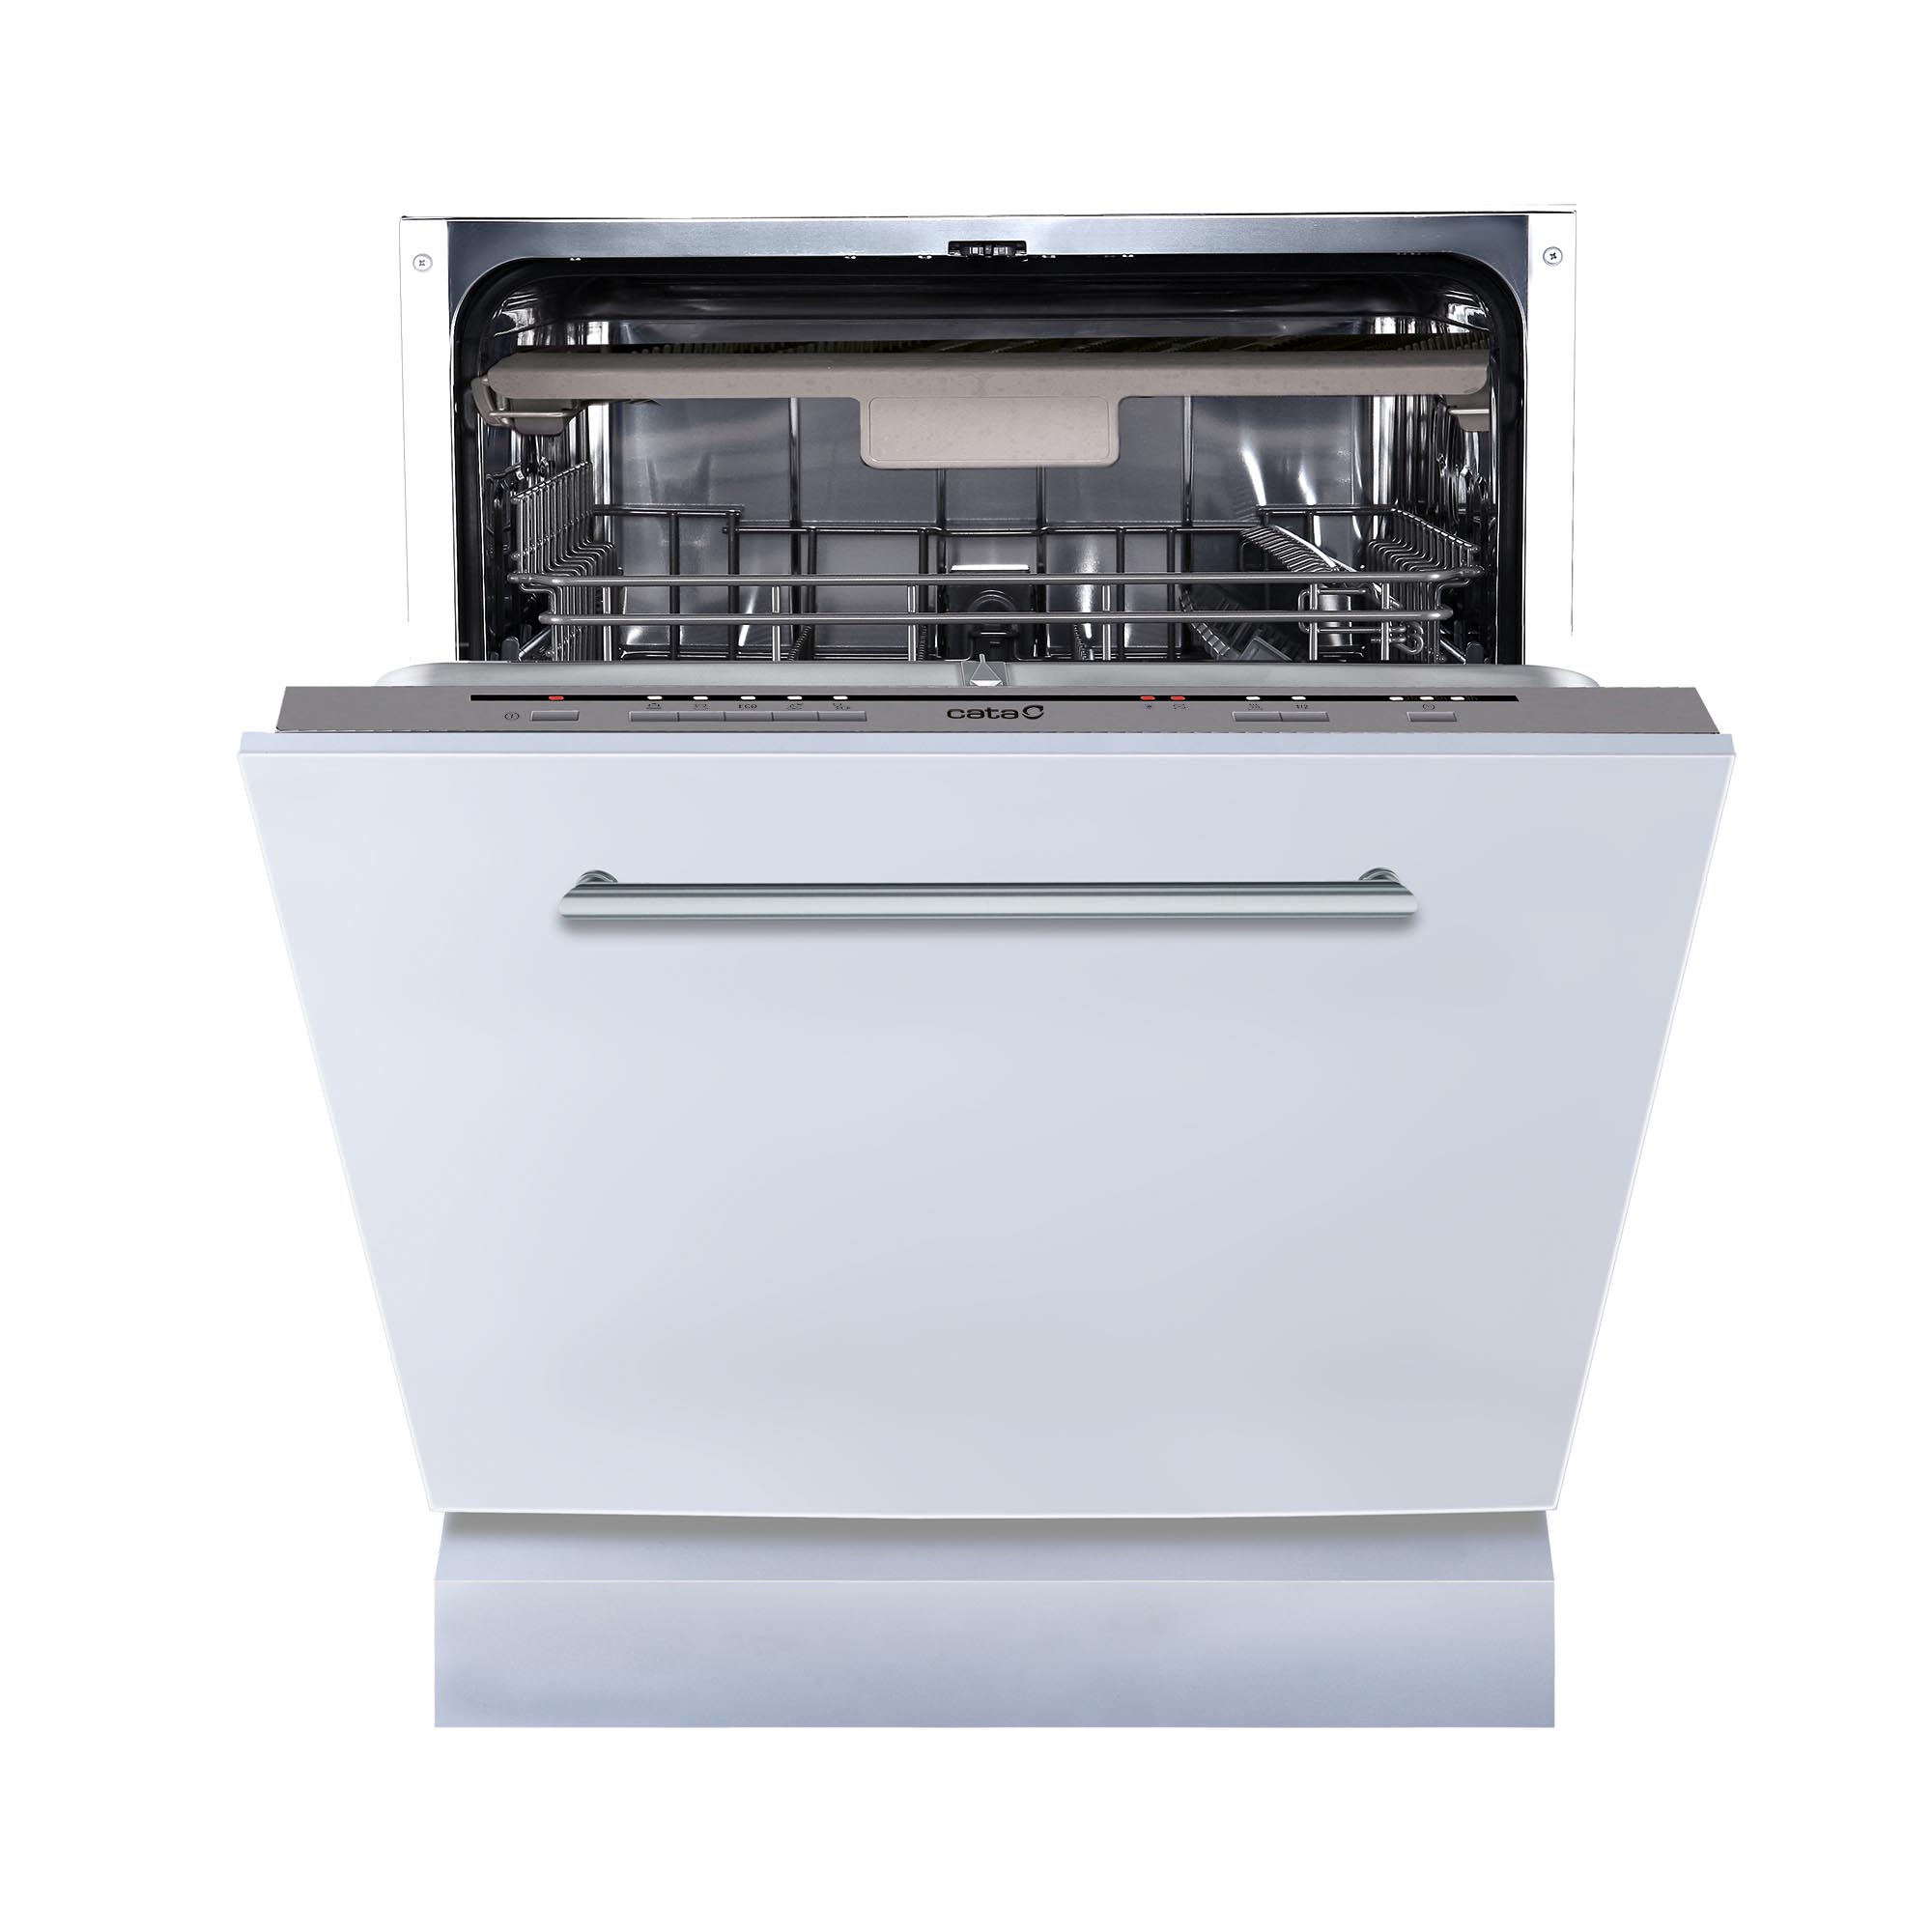 Фото 1 - Посудомоечная машина Cata LVI 61014 